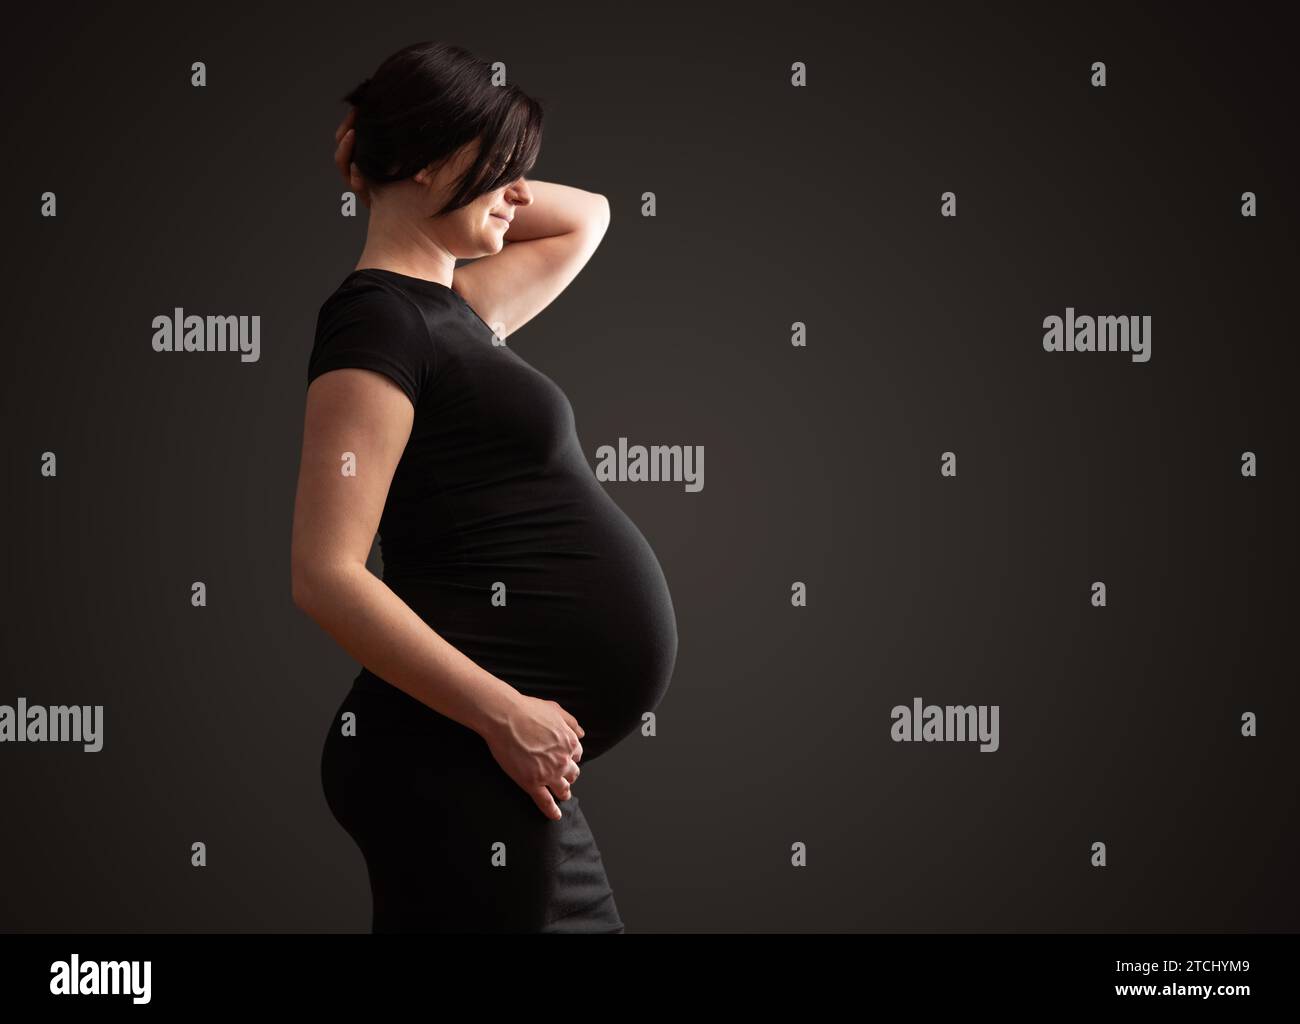 Junge schöne schwangere Frau mit dunklem Haar vor dunklem Hintergrund Stockfoto